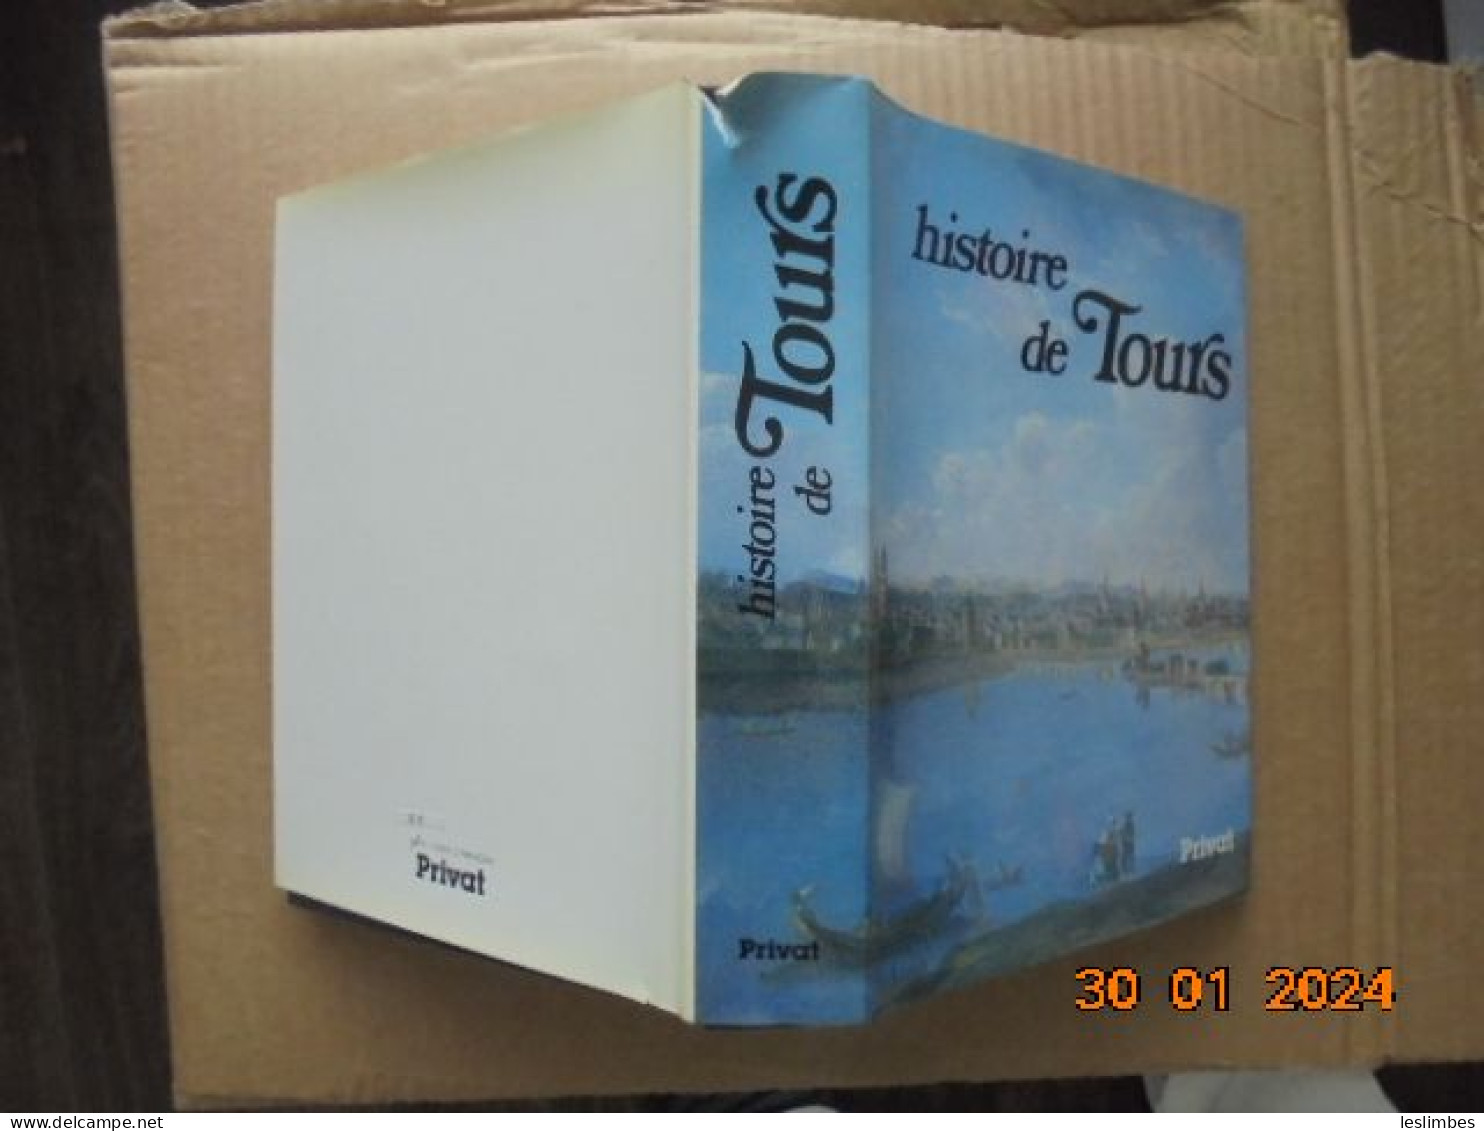 Histoire De Tours - Chevalier, Bernard - Privat 1985 - Centre - Val De Loire